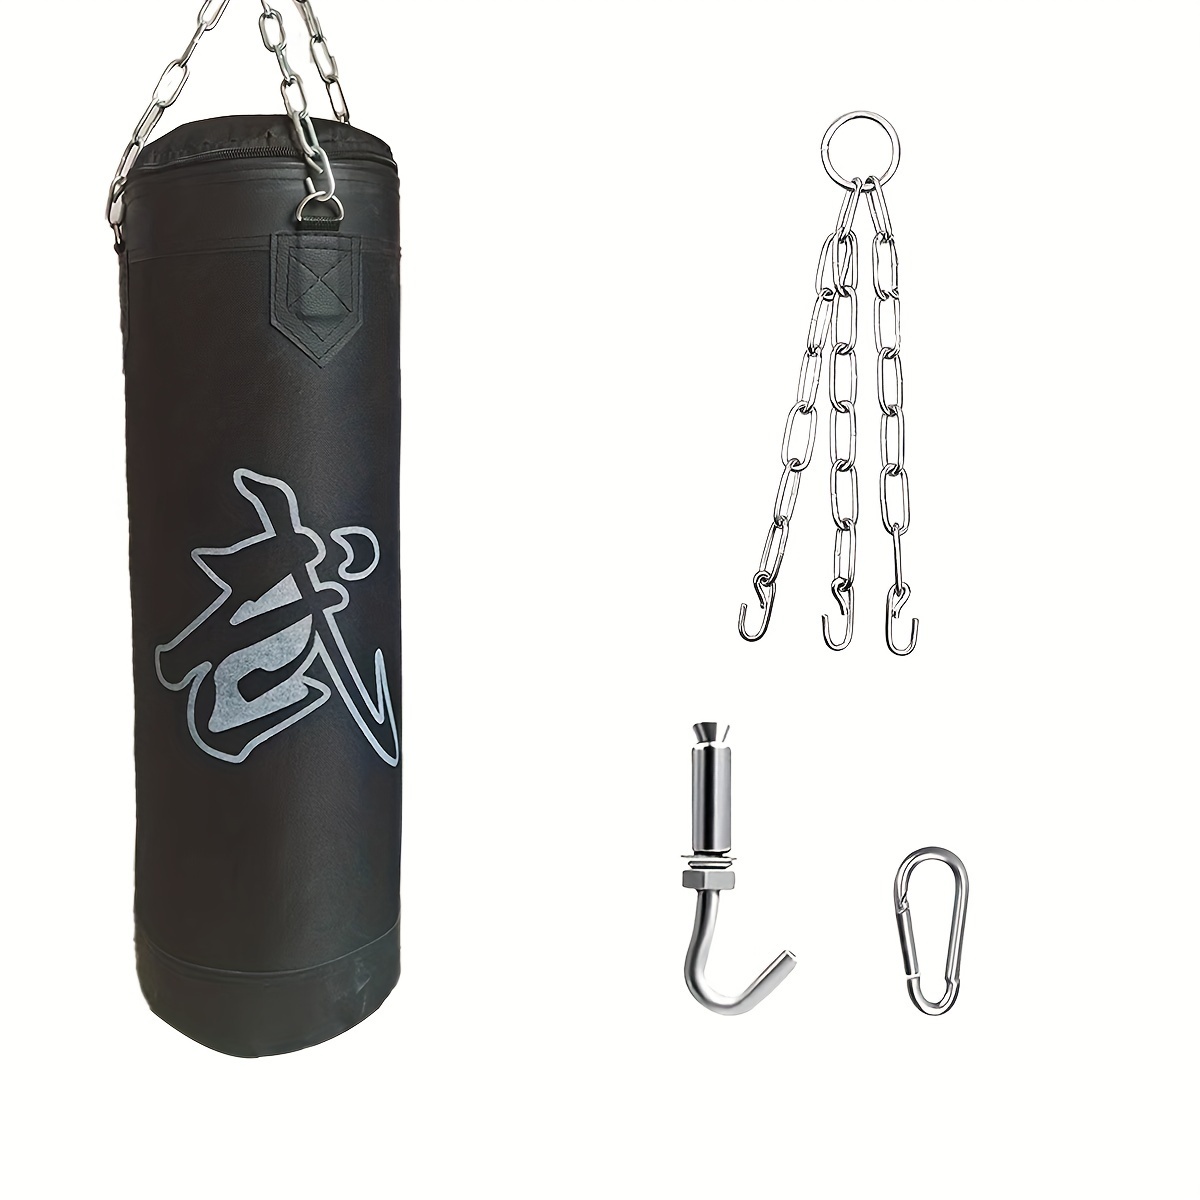 Boxing Punching Bag Muay Thai Gym Bag Training Weight Bags Filling Kicking  Sandbag Iron Taekwondo Punch Bag Toddler